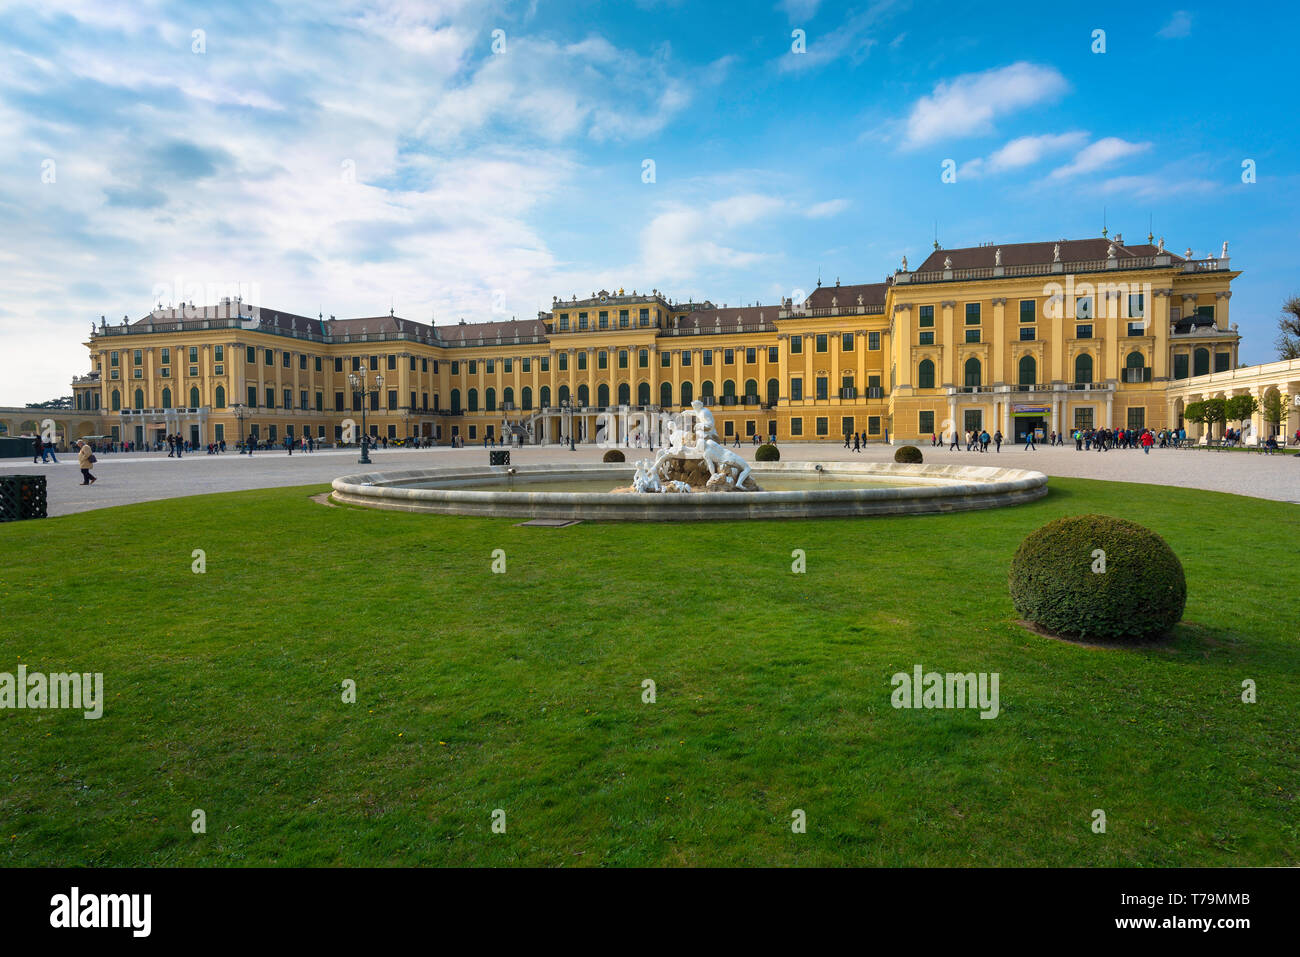 Palace Wien, mit Blick auf die barocke Fassade von Schloss Schönbrunn von Norden gesehen - West Ecke seines großen Innenhof, Wien, Österreich. Stockfoto